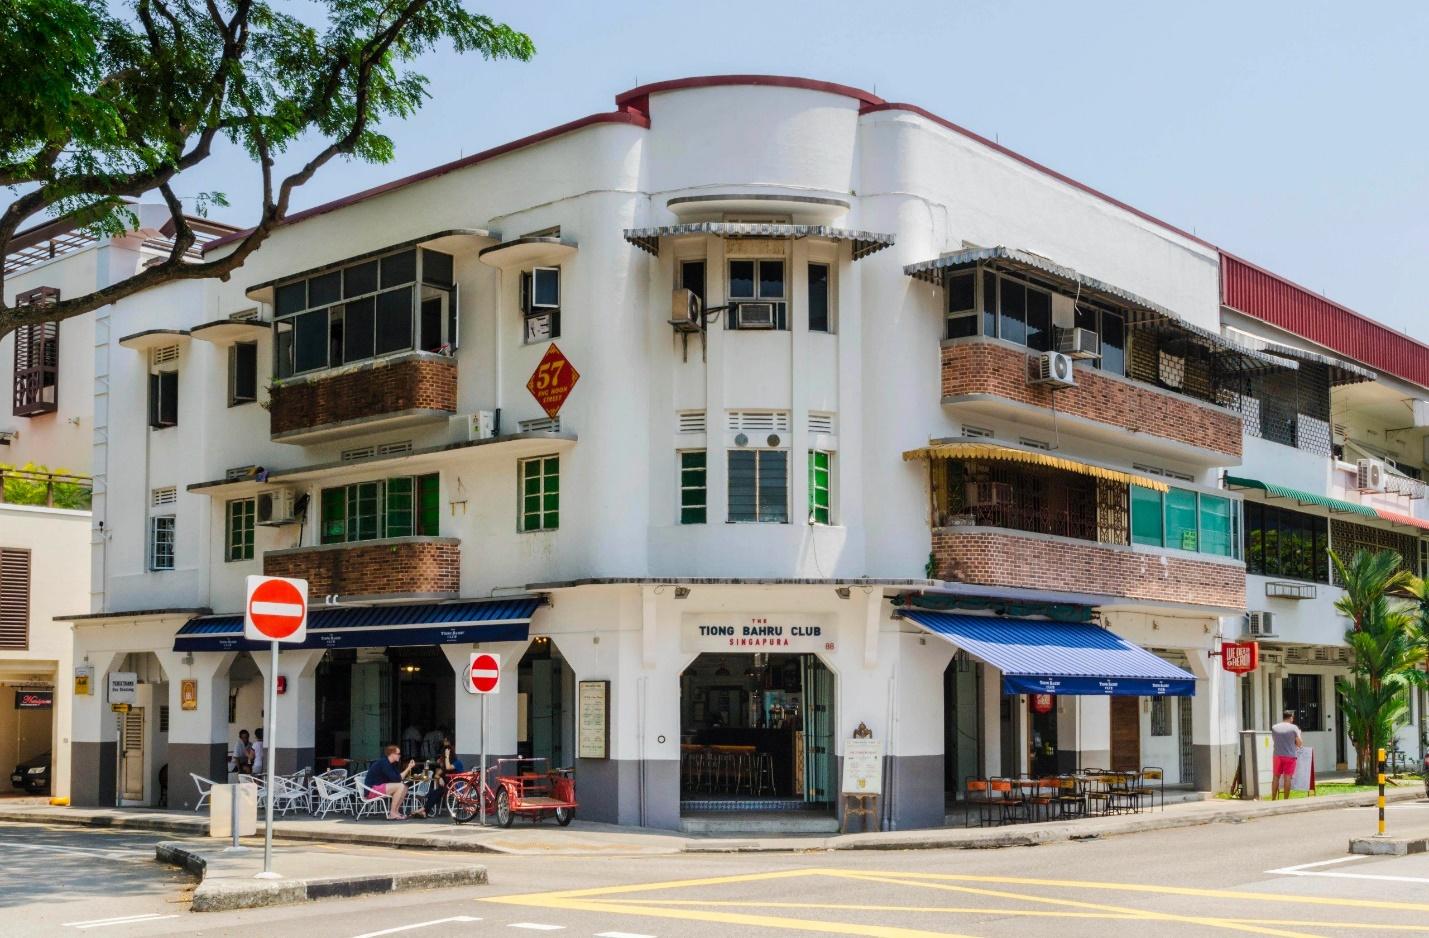 Lang thang tại Tiong Bahru: Khu phố lâu đời nhất Singapore với nét hoài cổ xen lẫn hiện đại - Ảnh 1.